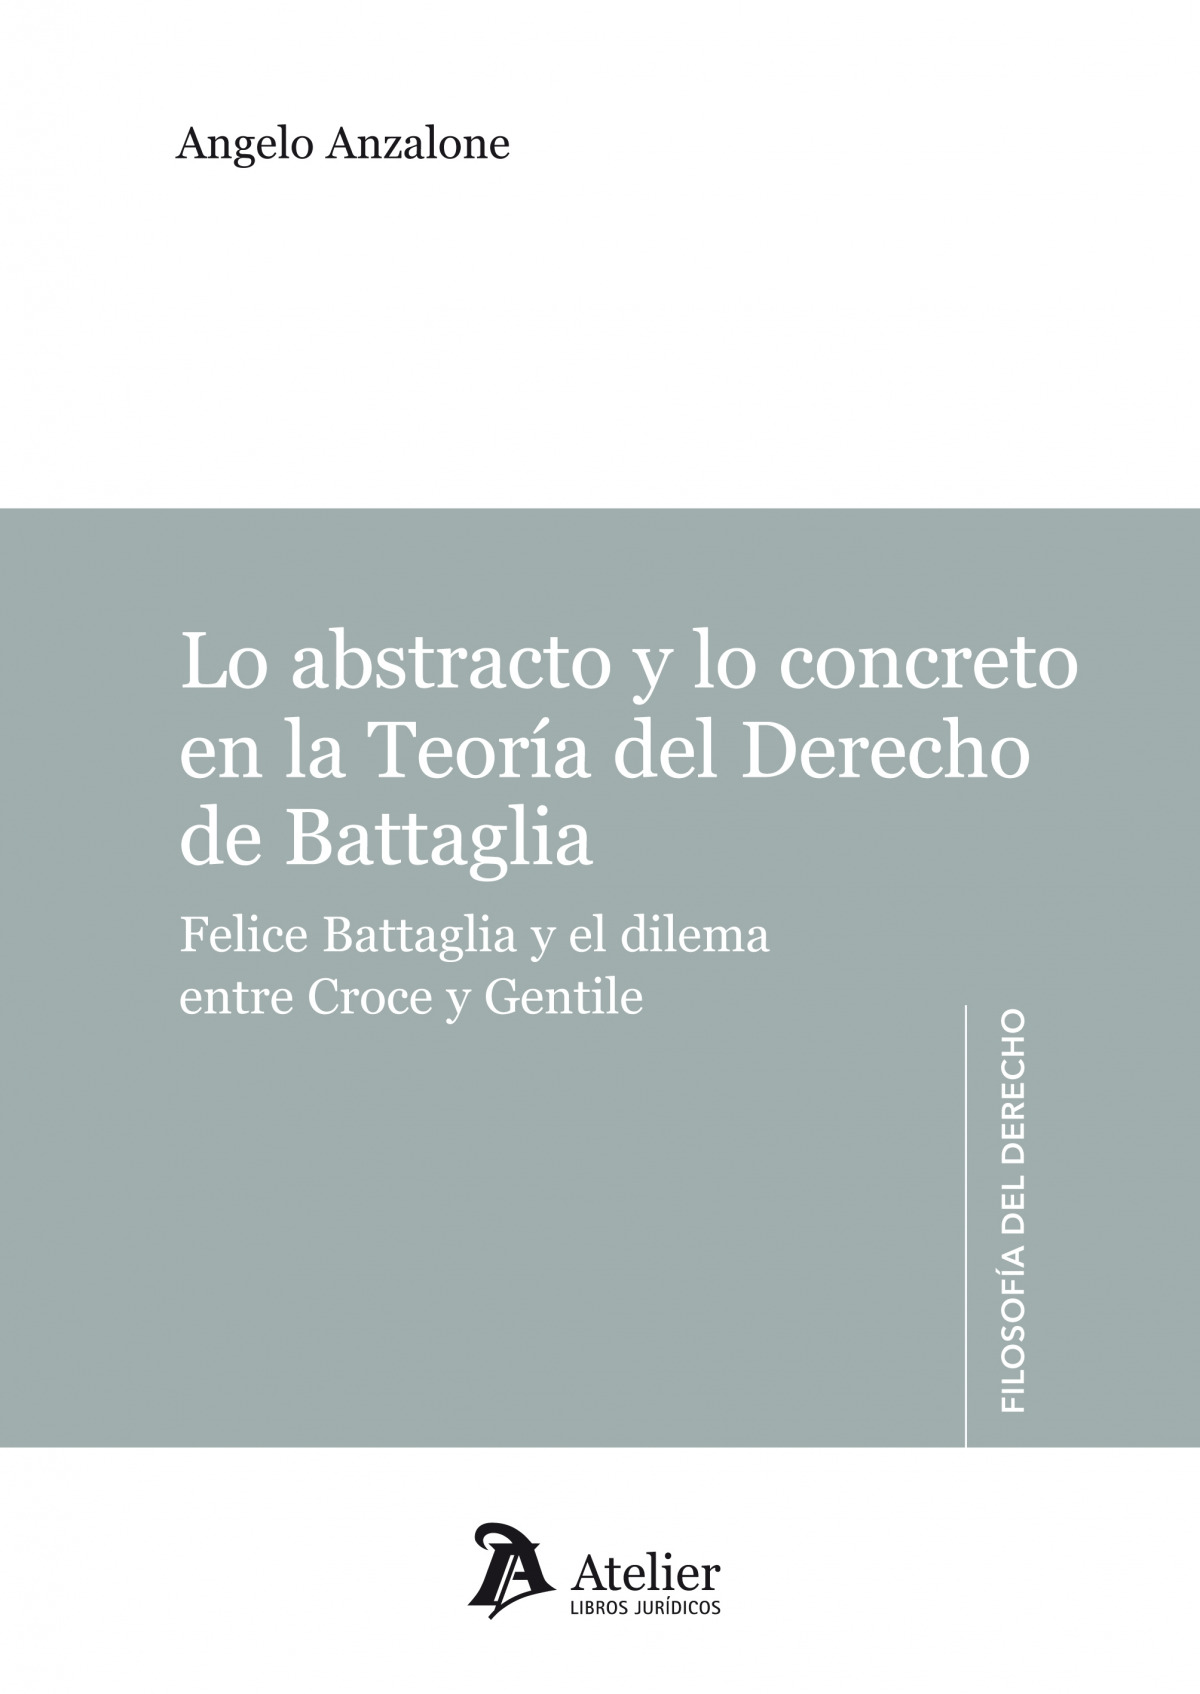 Lo abstracto y la concreto en la teoría del derecho de Battaglia - Anzalone, Angelo